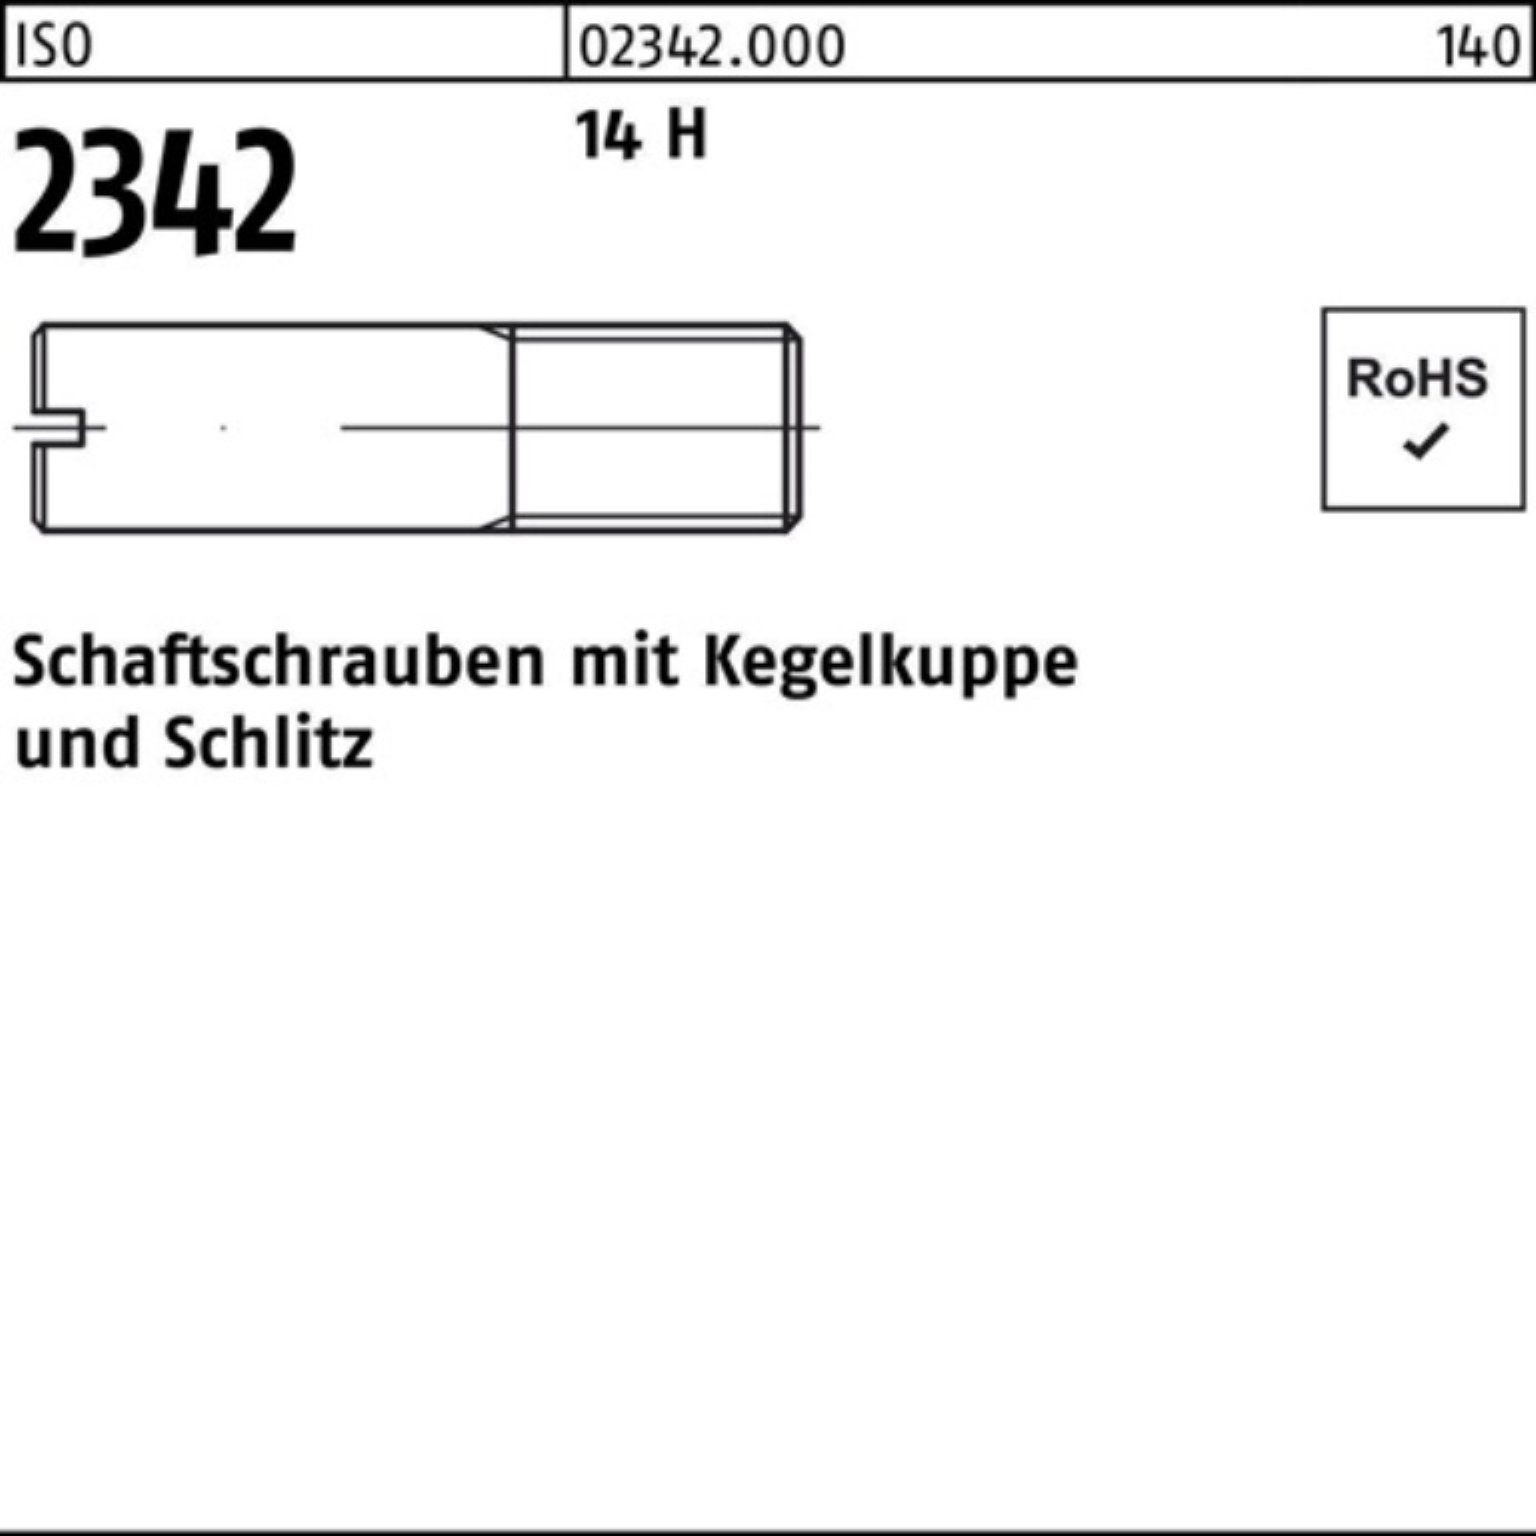 Reyher M4x ISO 14 100 Schaftschraube H 10 2342 Kegelkuppe/Schlitz 100er Schraube Pack